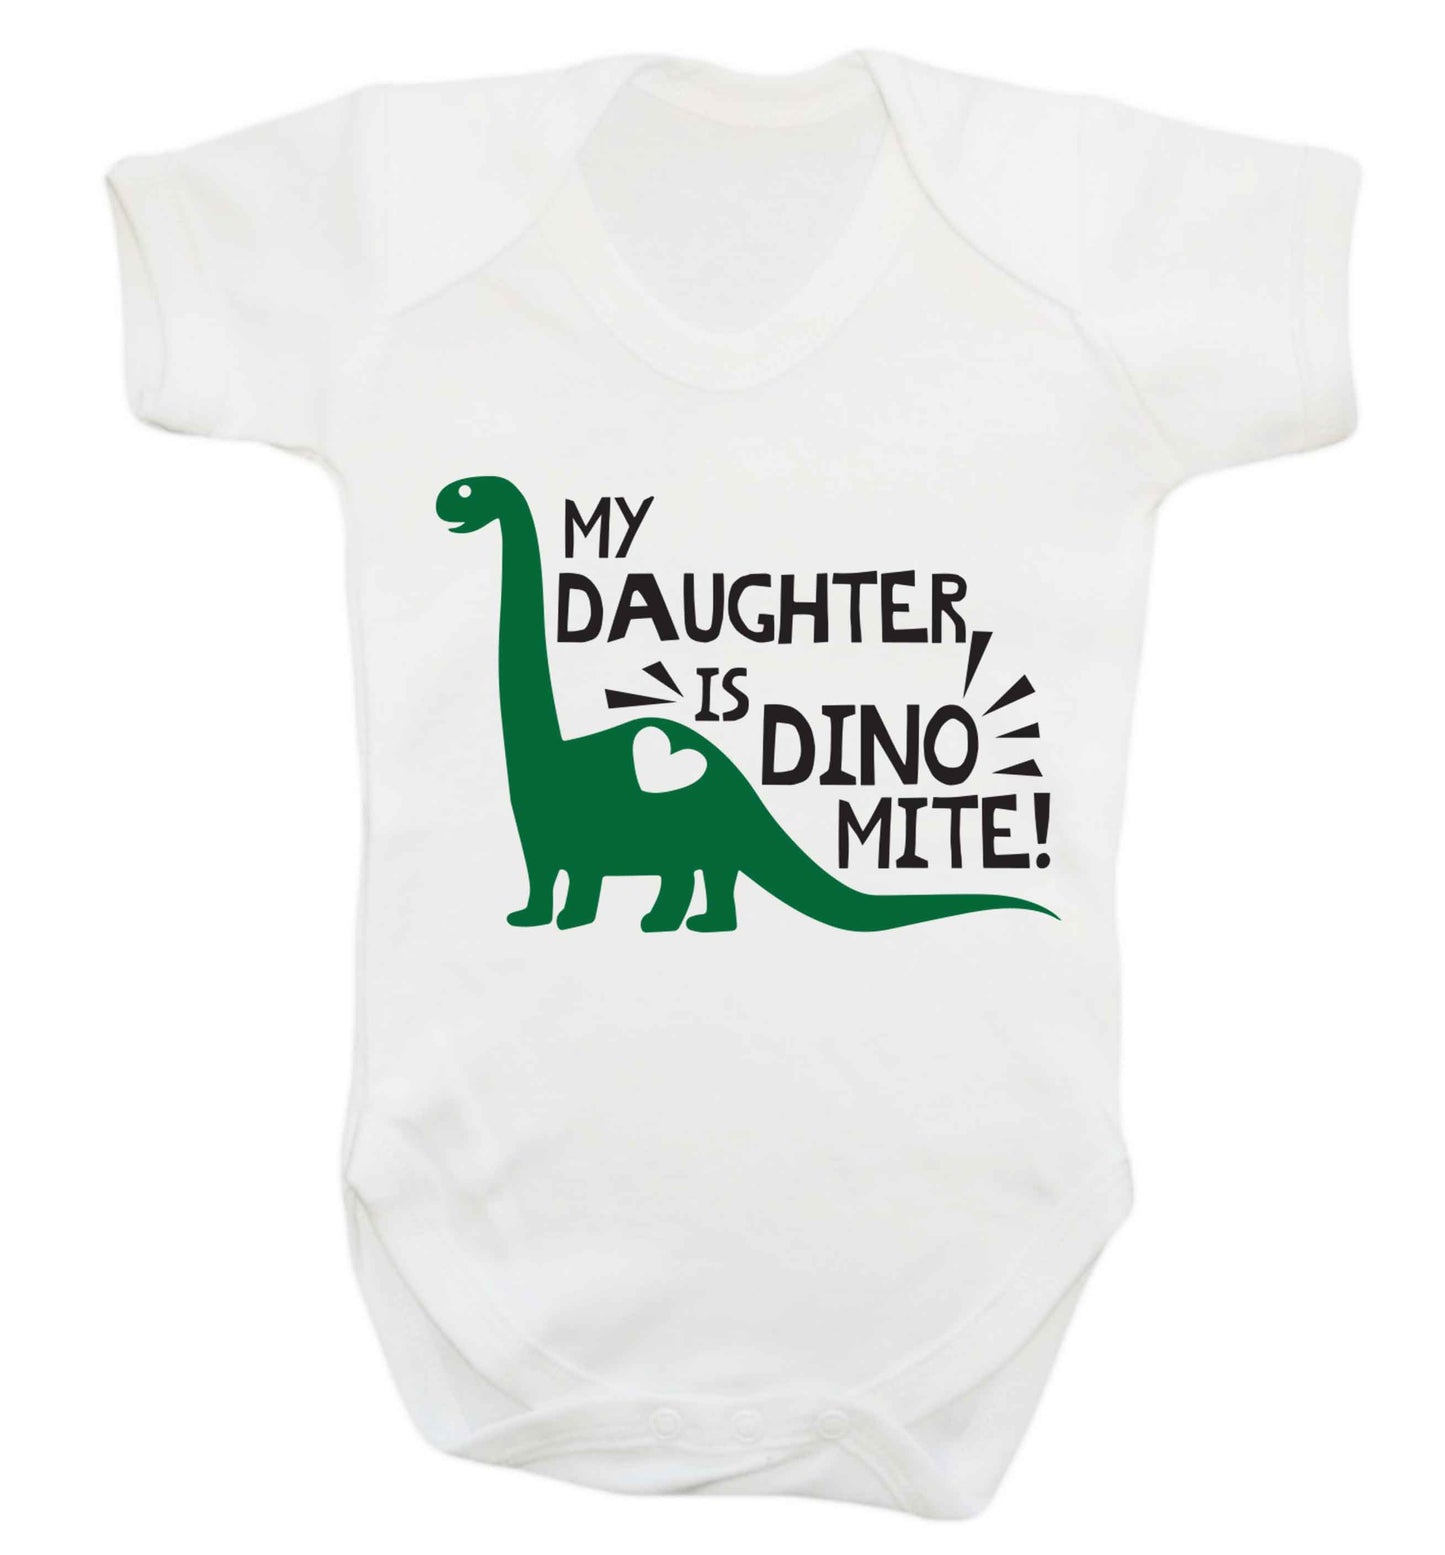 My daughter is dinomite! Baby Vest white 18-24 months